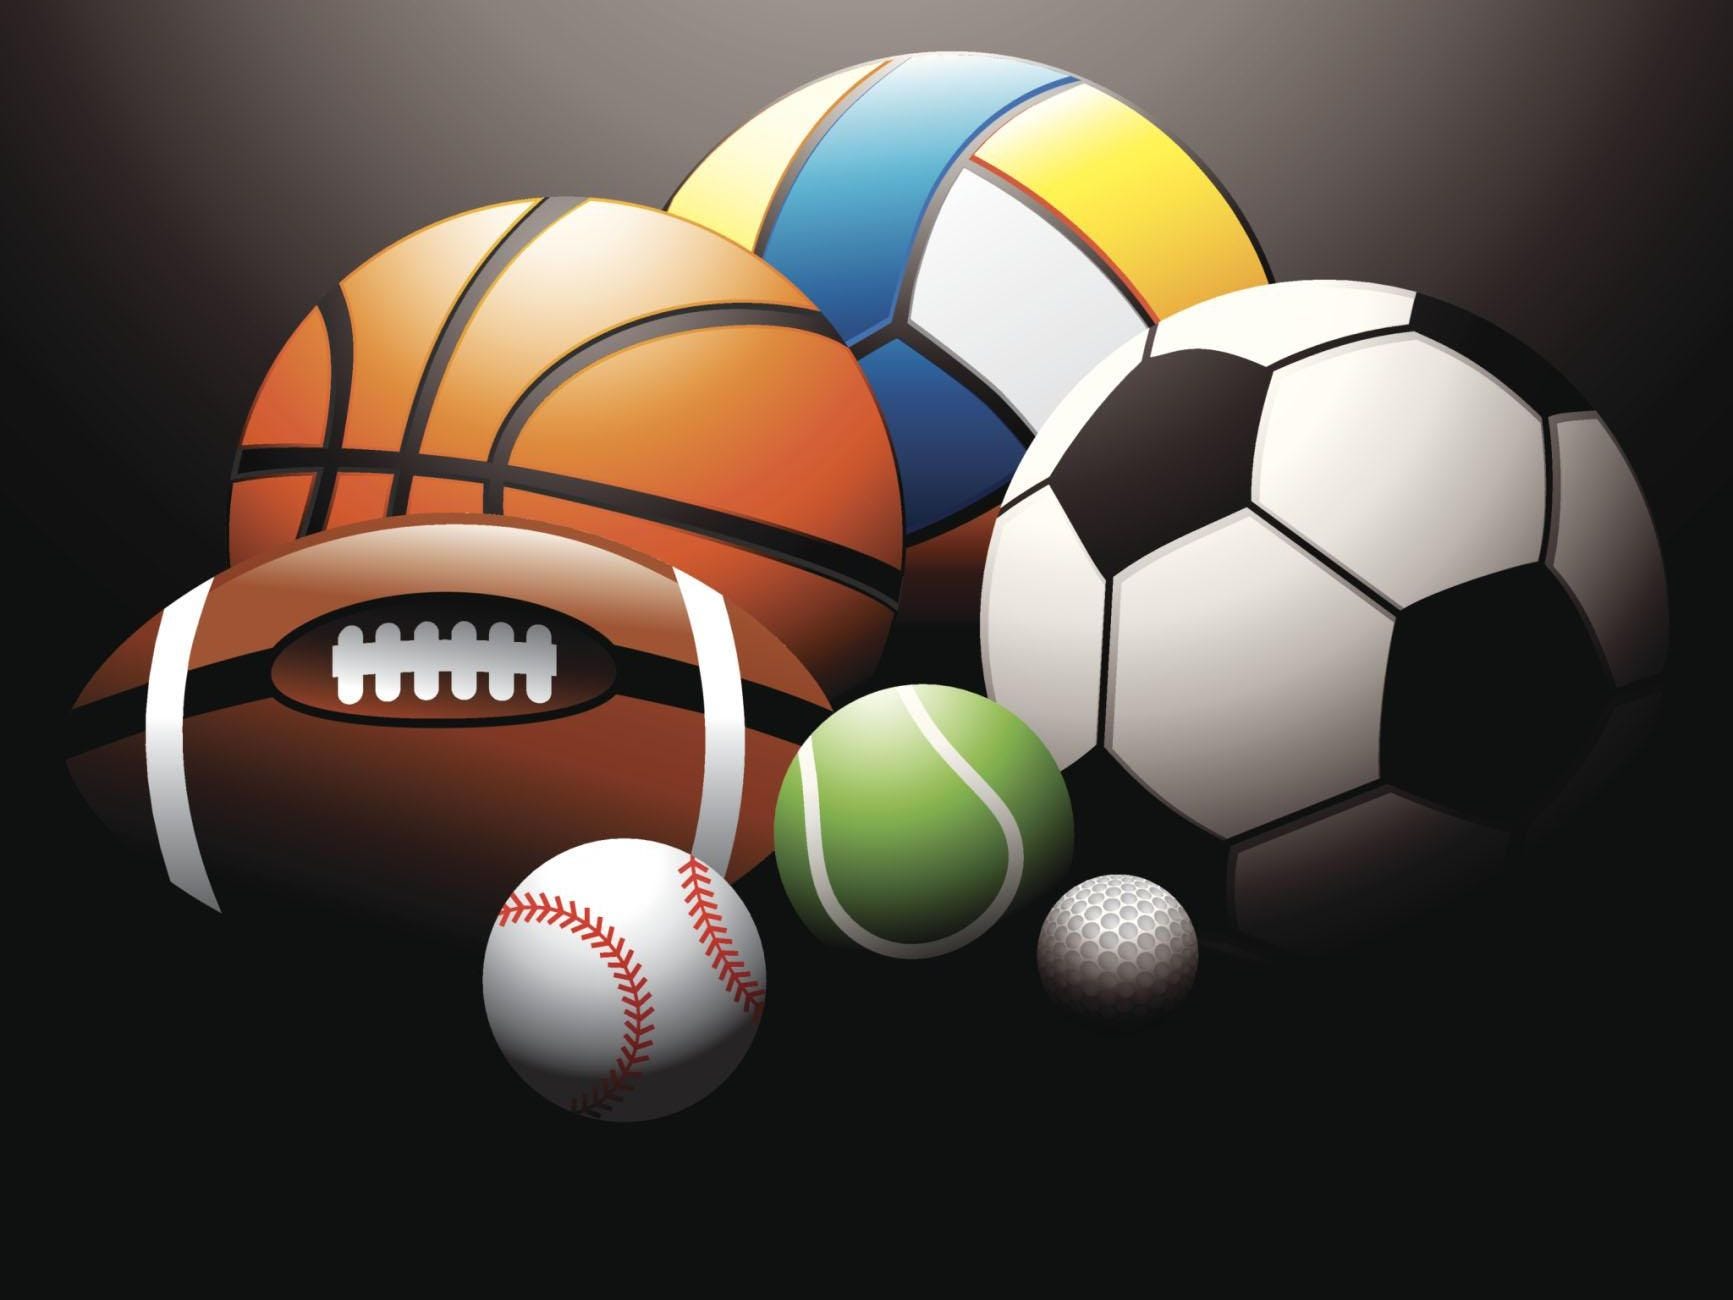 fondo de pantalla con temas deportivos,balón de fútbol,fútbol americano,equipo deportivo,fútbol,gráficos